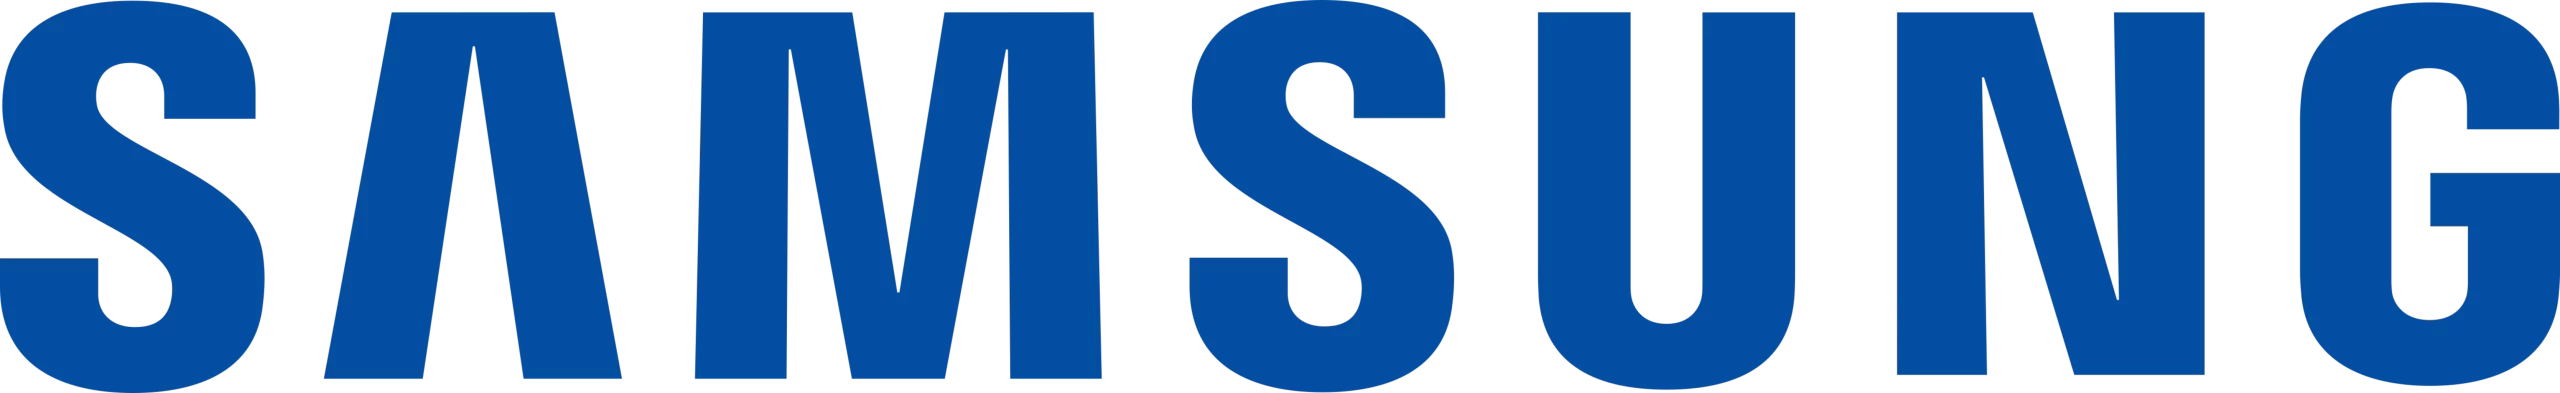 logo samsung bleu